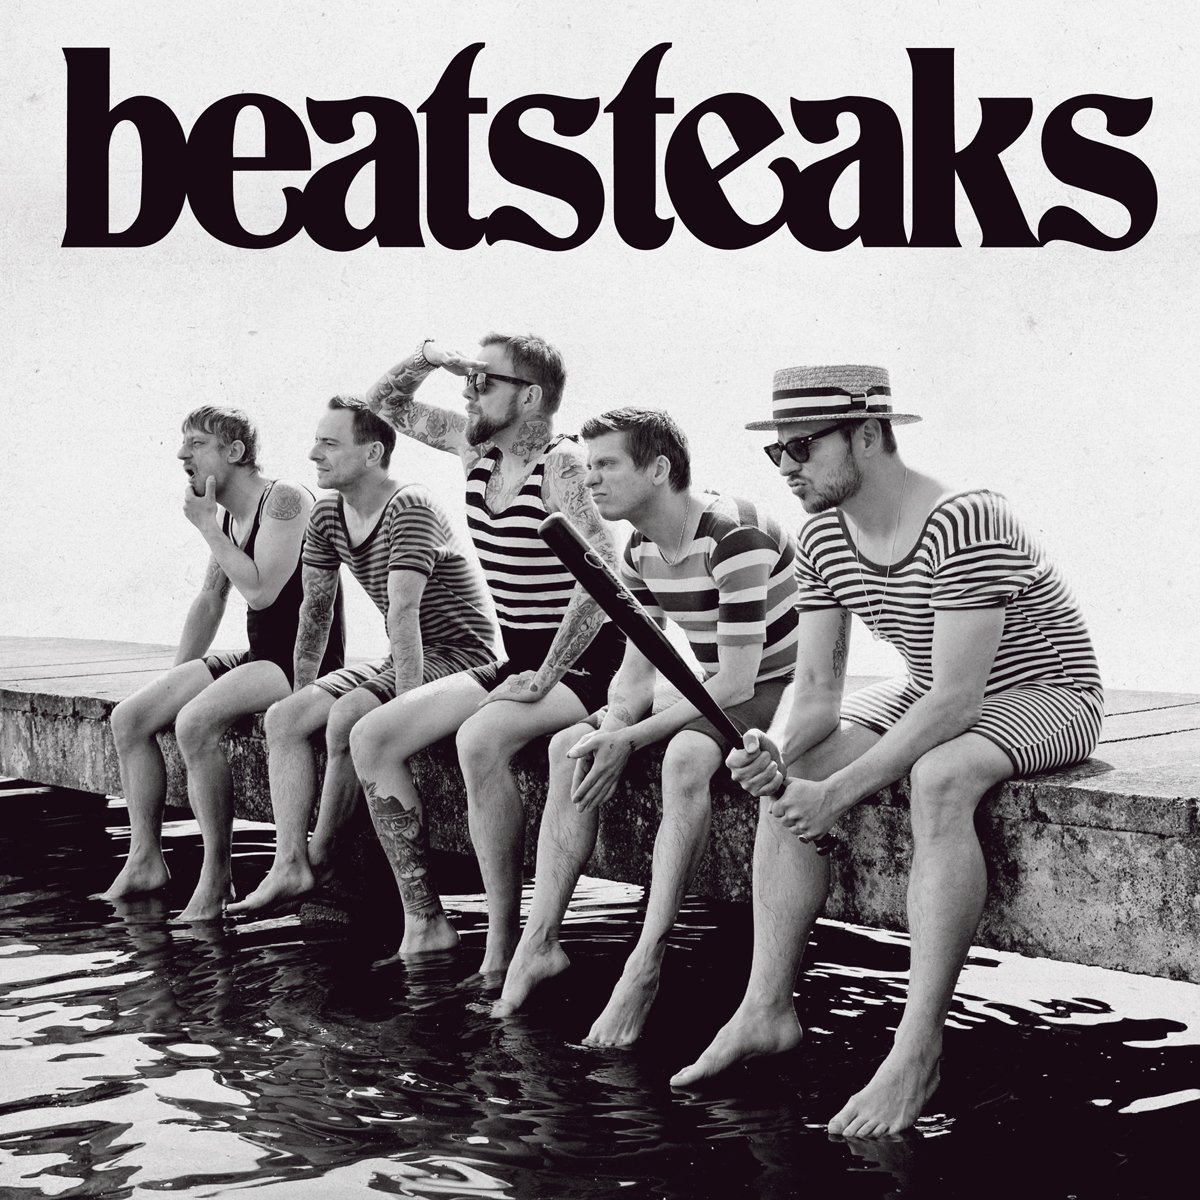 Cover vom Album Beatsteaks "Beatsteaks", Bild: Beatsteaks/Warner Music